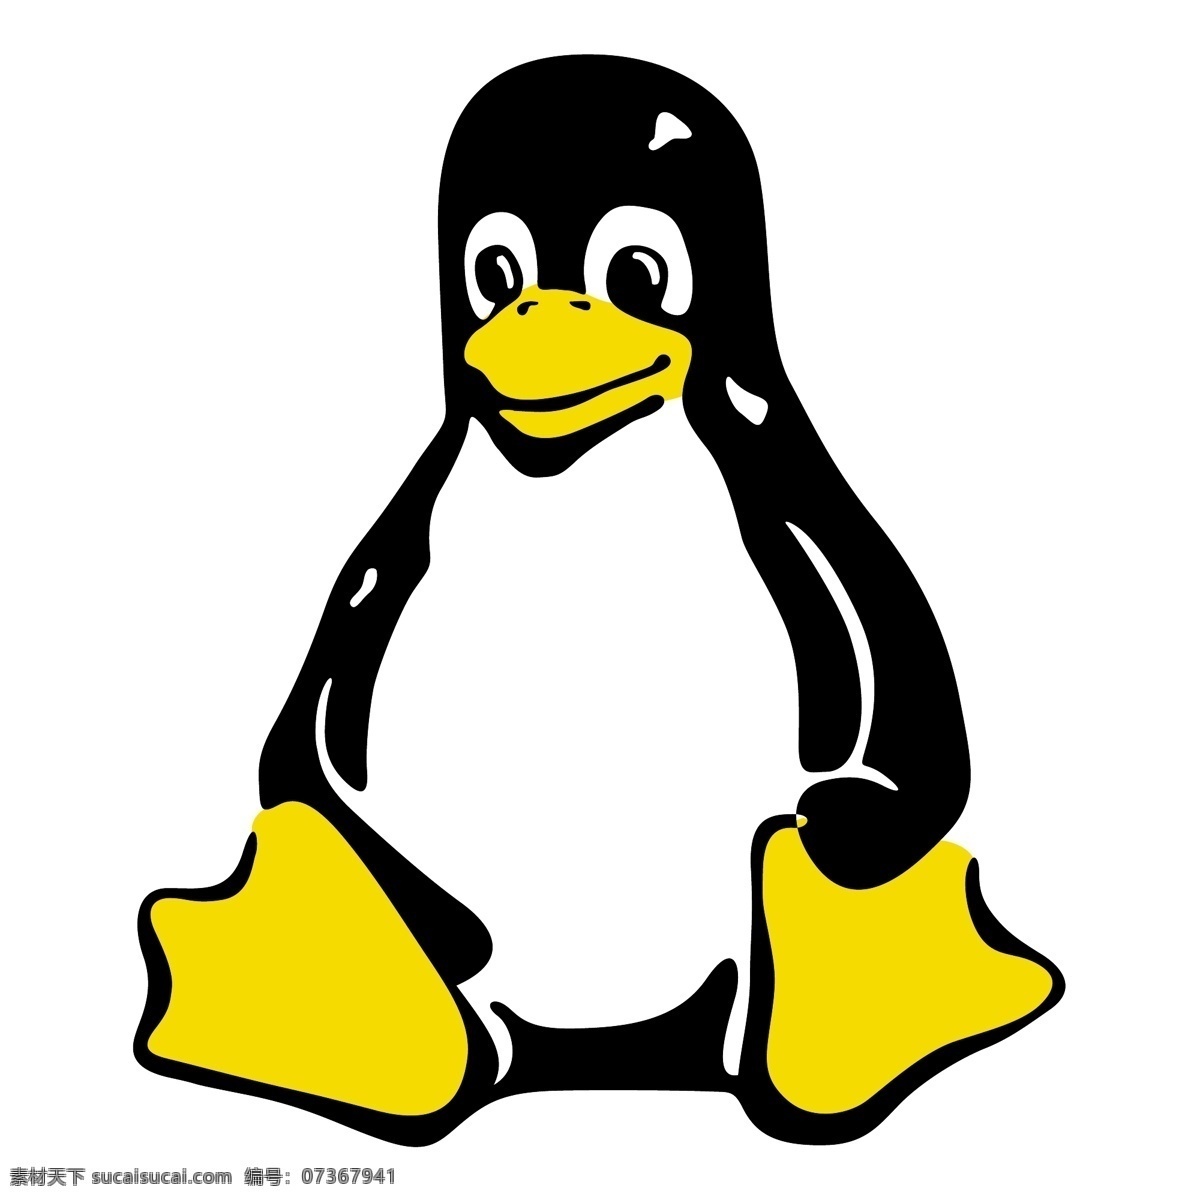 linux 晚礼服 免费 礼服 标志 标识 psd源文件 logo设计